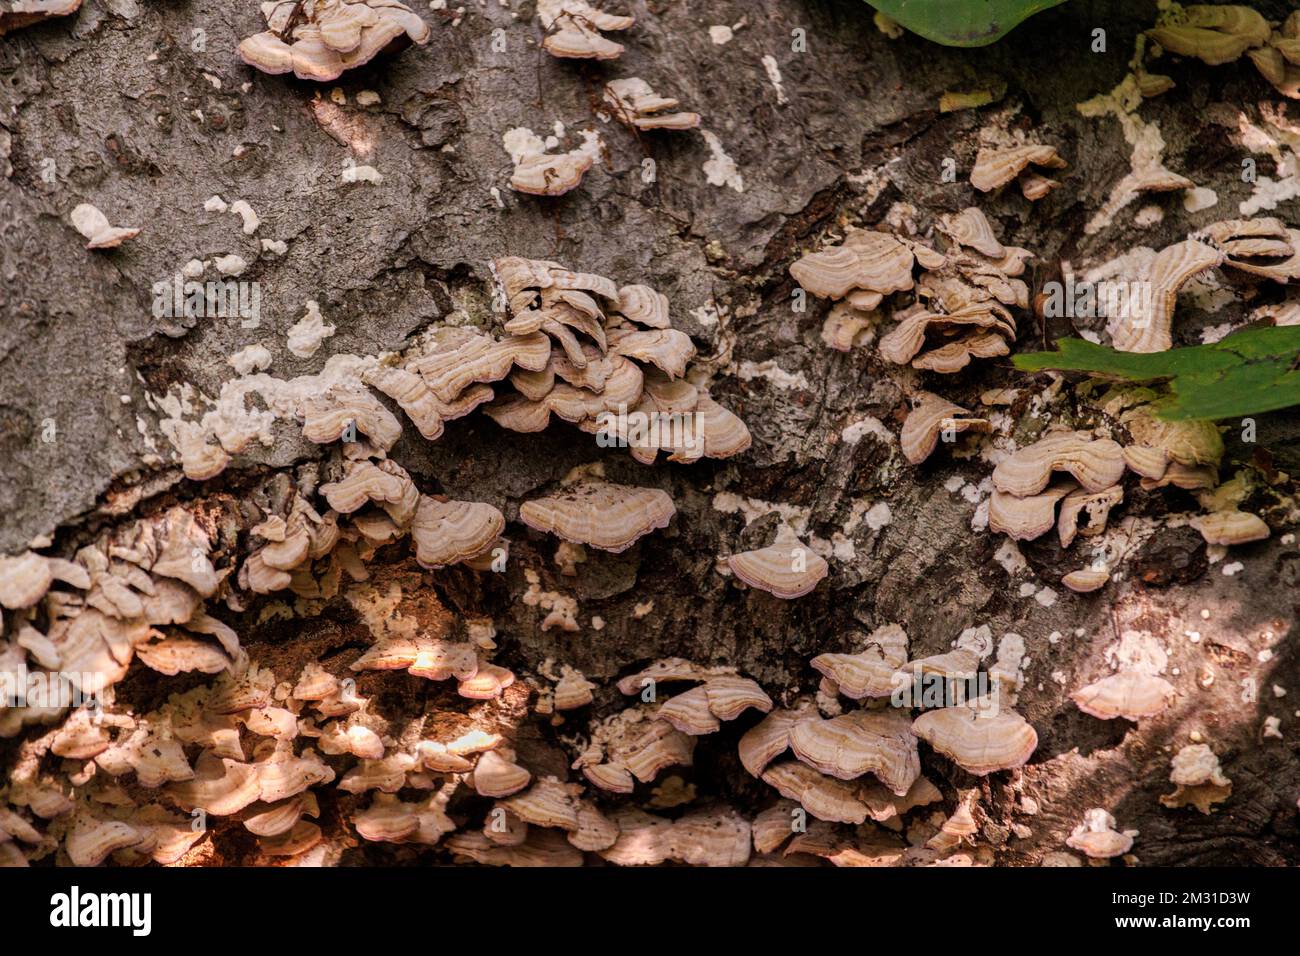 funghi selvatici, squamosi, funghi che crescono sulla corteccia di un albero morto in una foresta Foto Stock